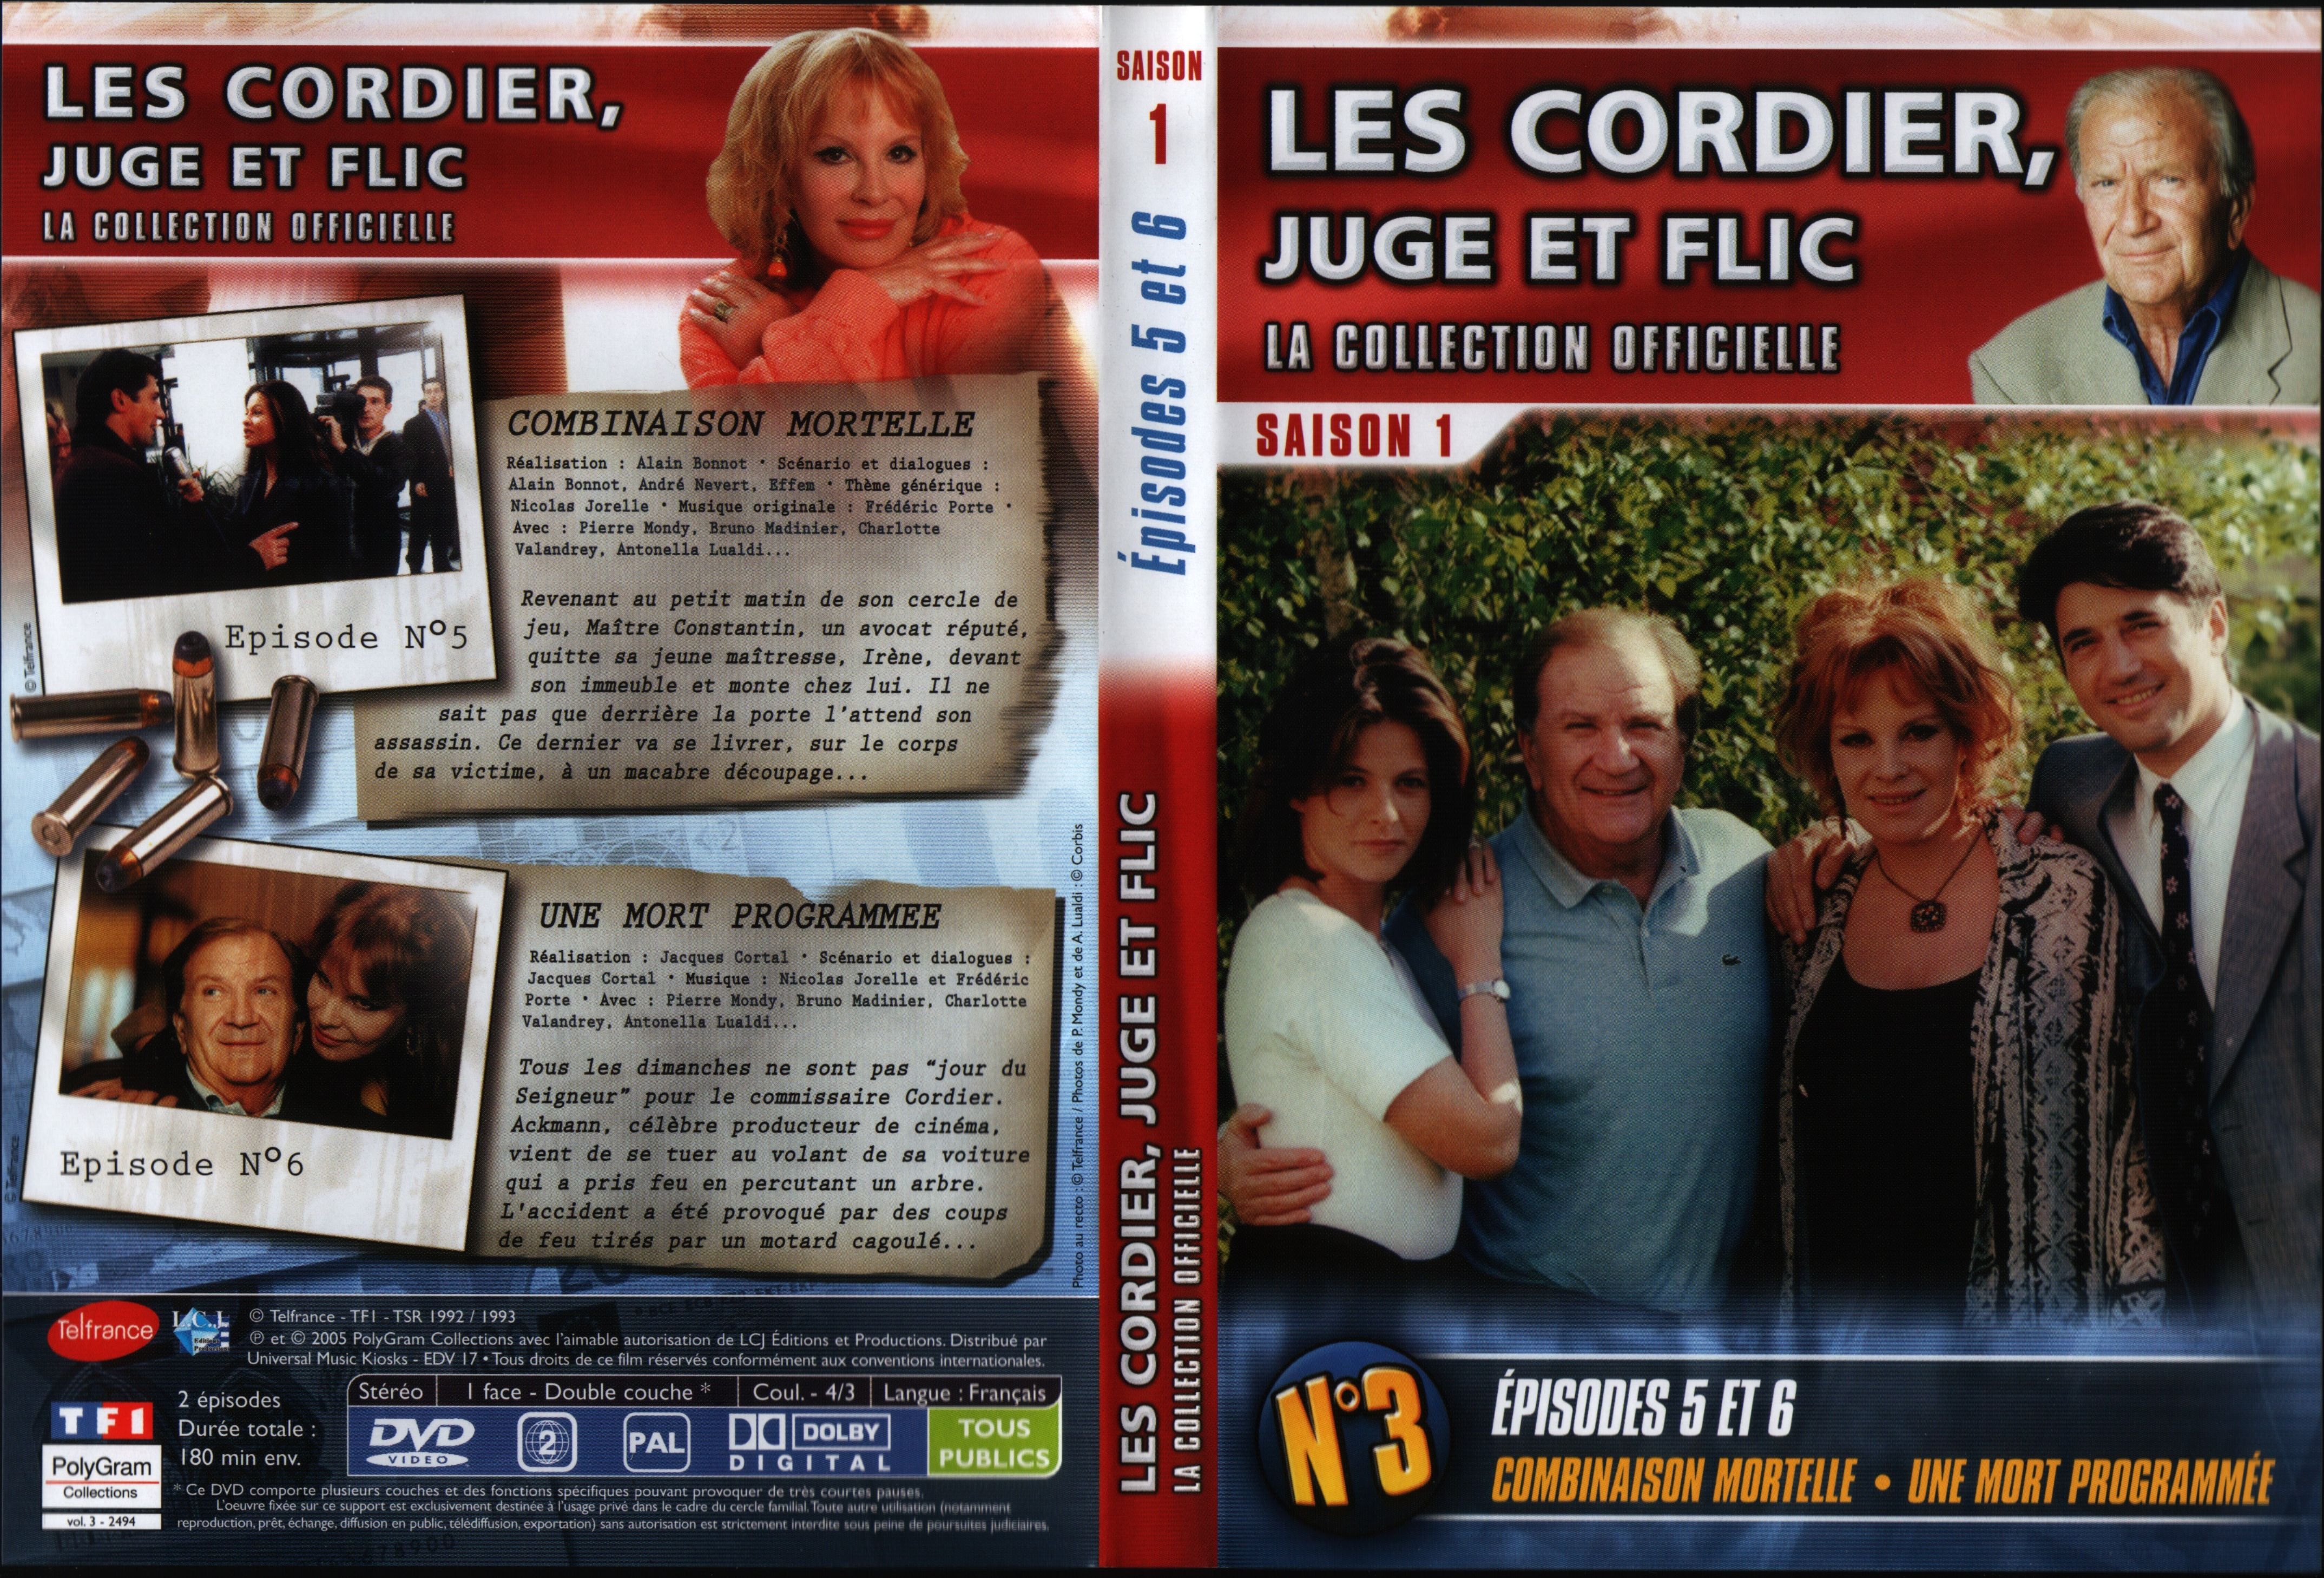 Jaquette DVD Les cordier juge et flic Saison 1 vol 3